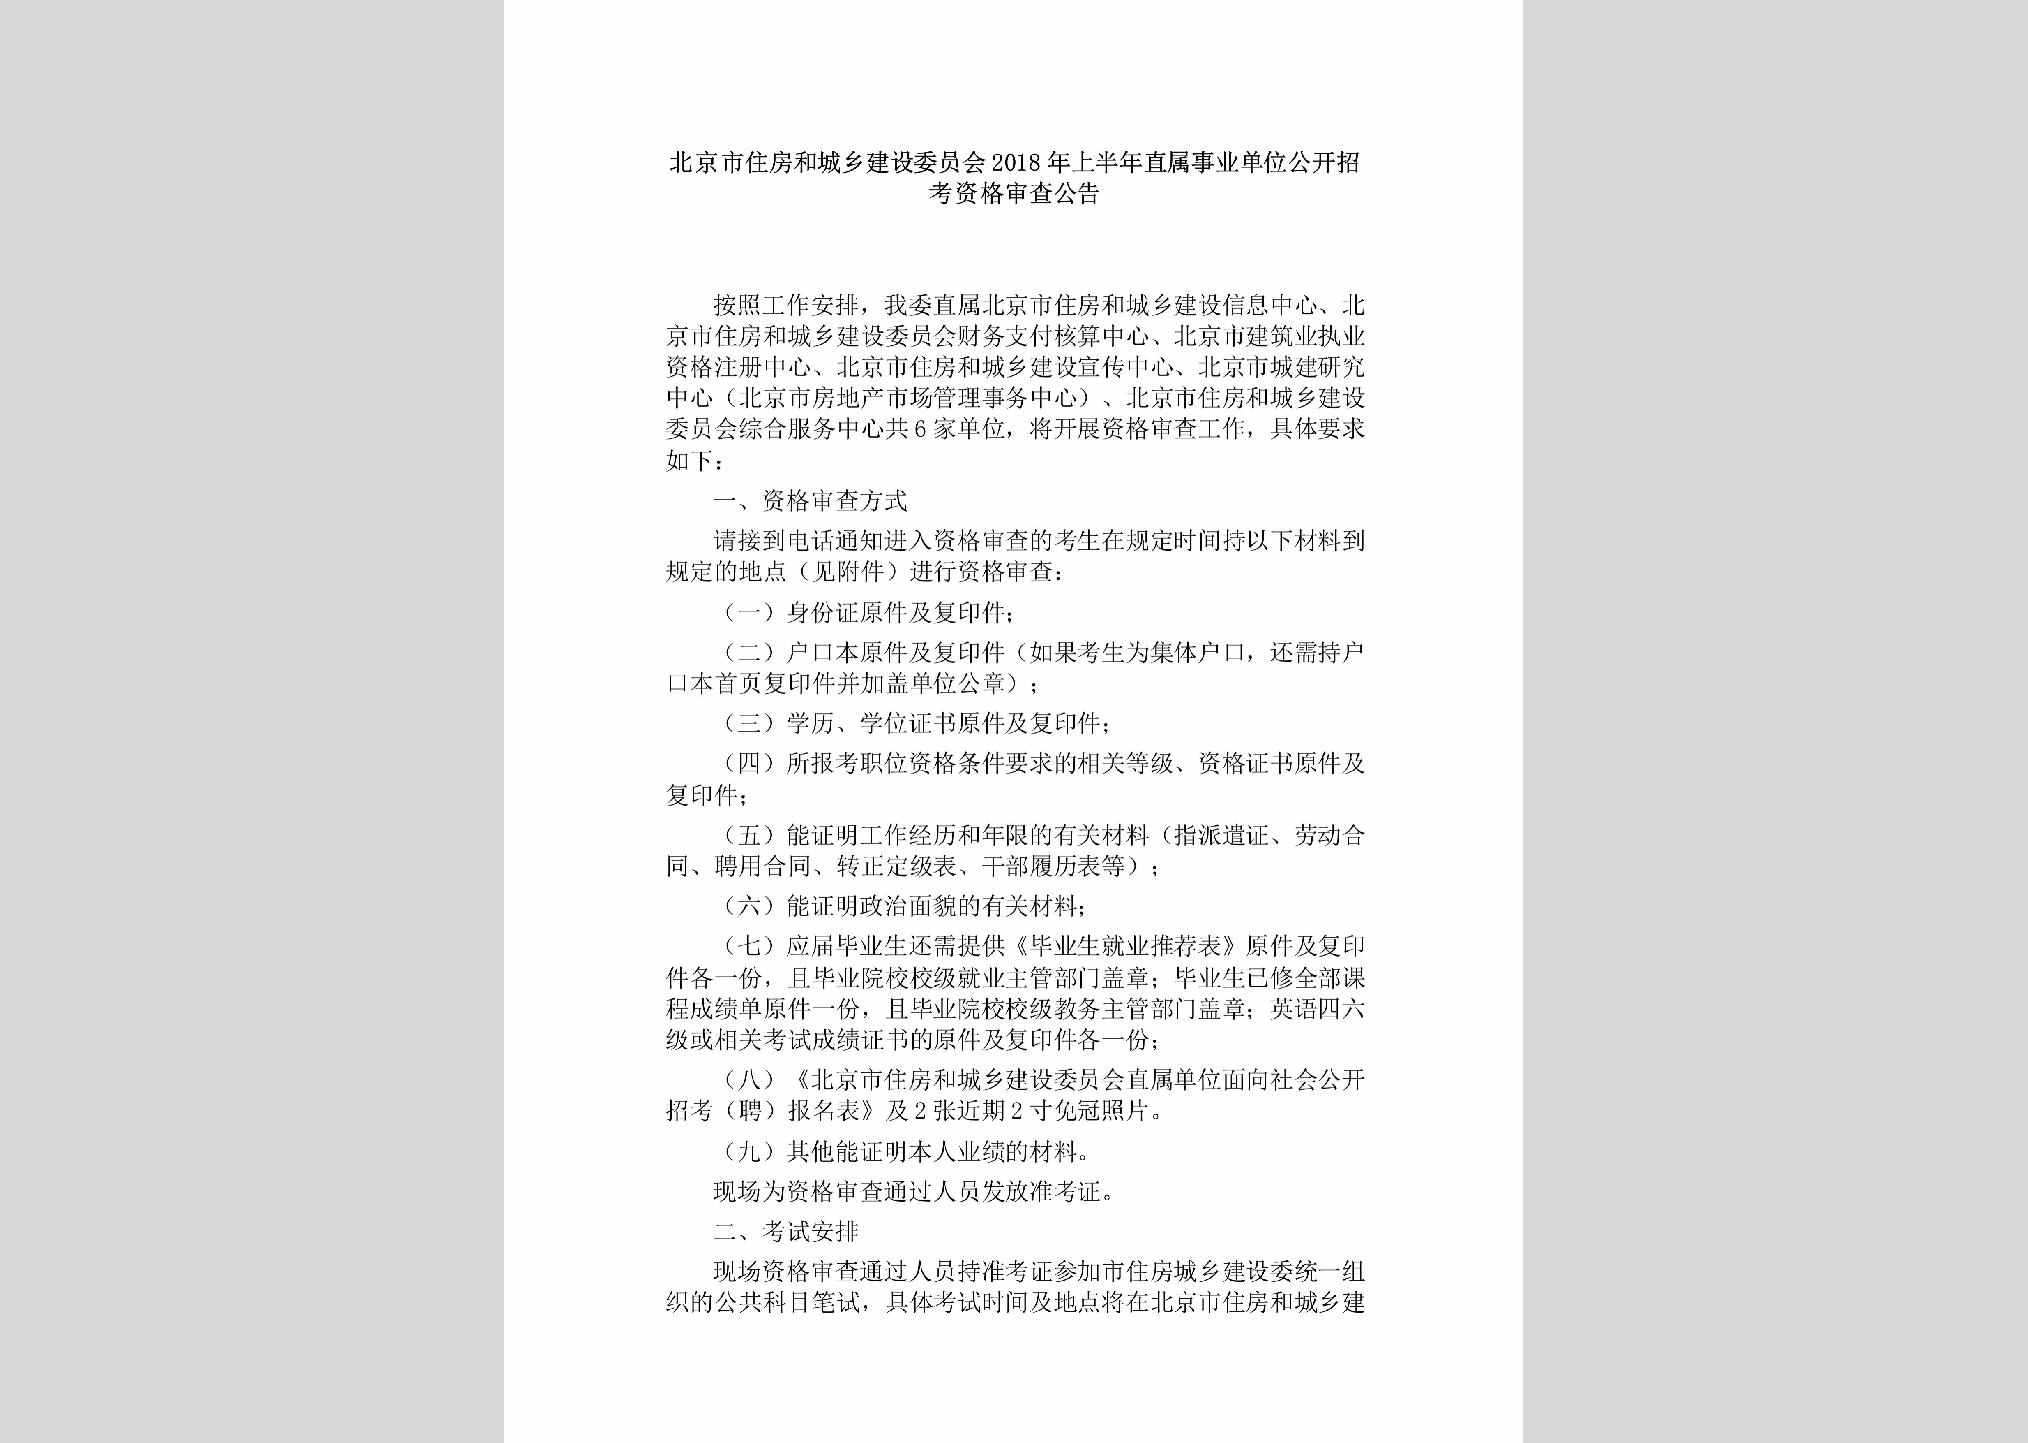 BJ-SYDWSCGG-2018：北京市住房和城乡建设委员会2018年上半年直属事业单位公开招考资格审查公告